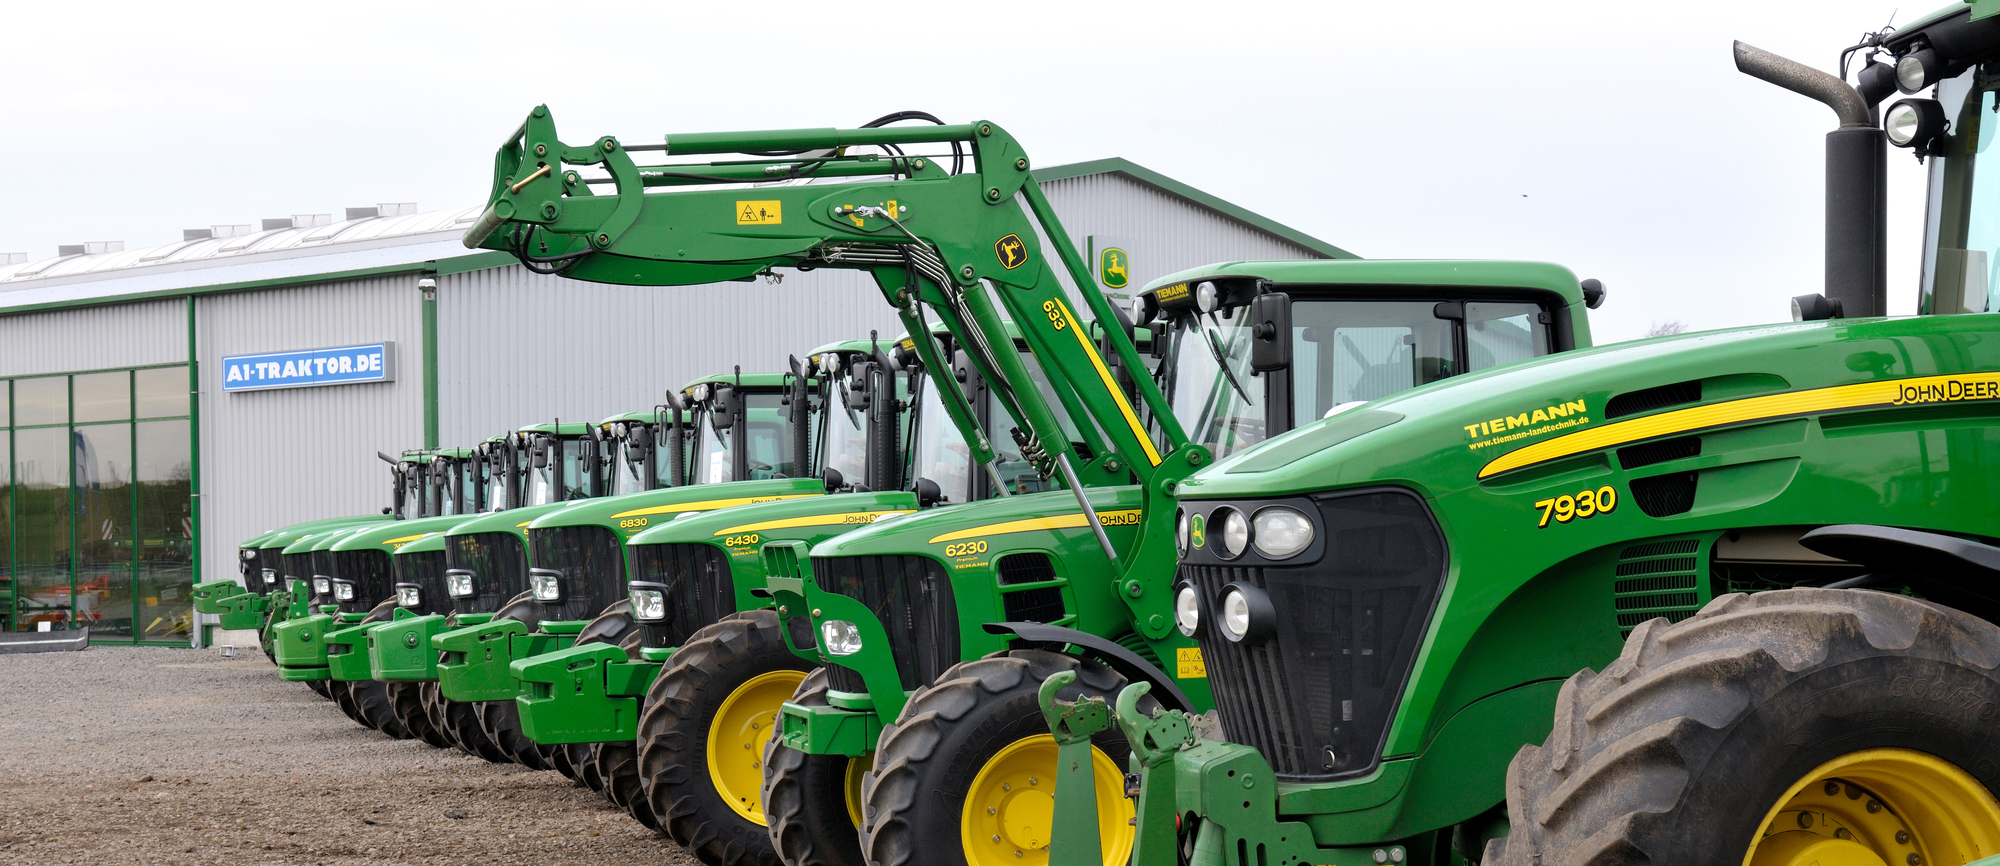 Tiemann Landtechnik GmbH & Co. KG - Farm tractors undefined: picture 2